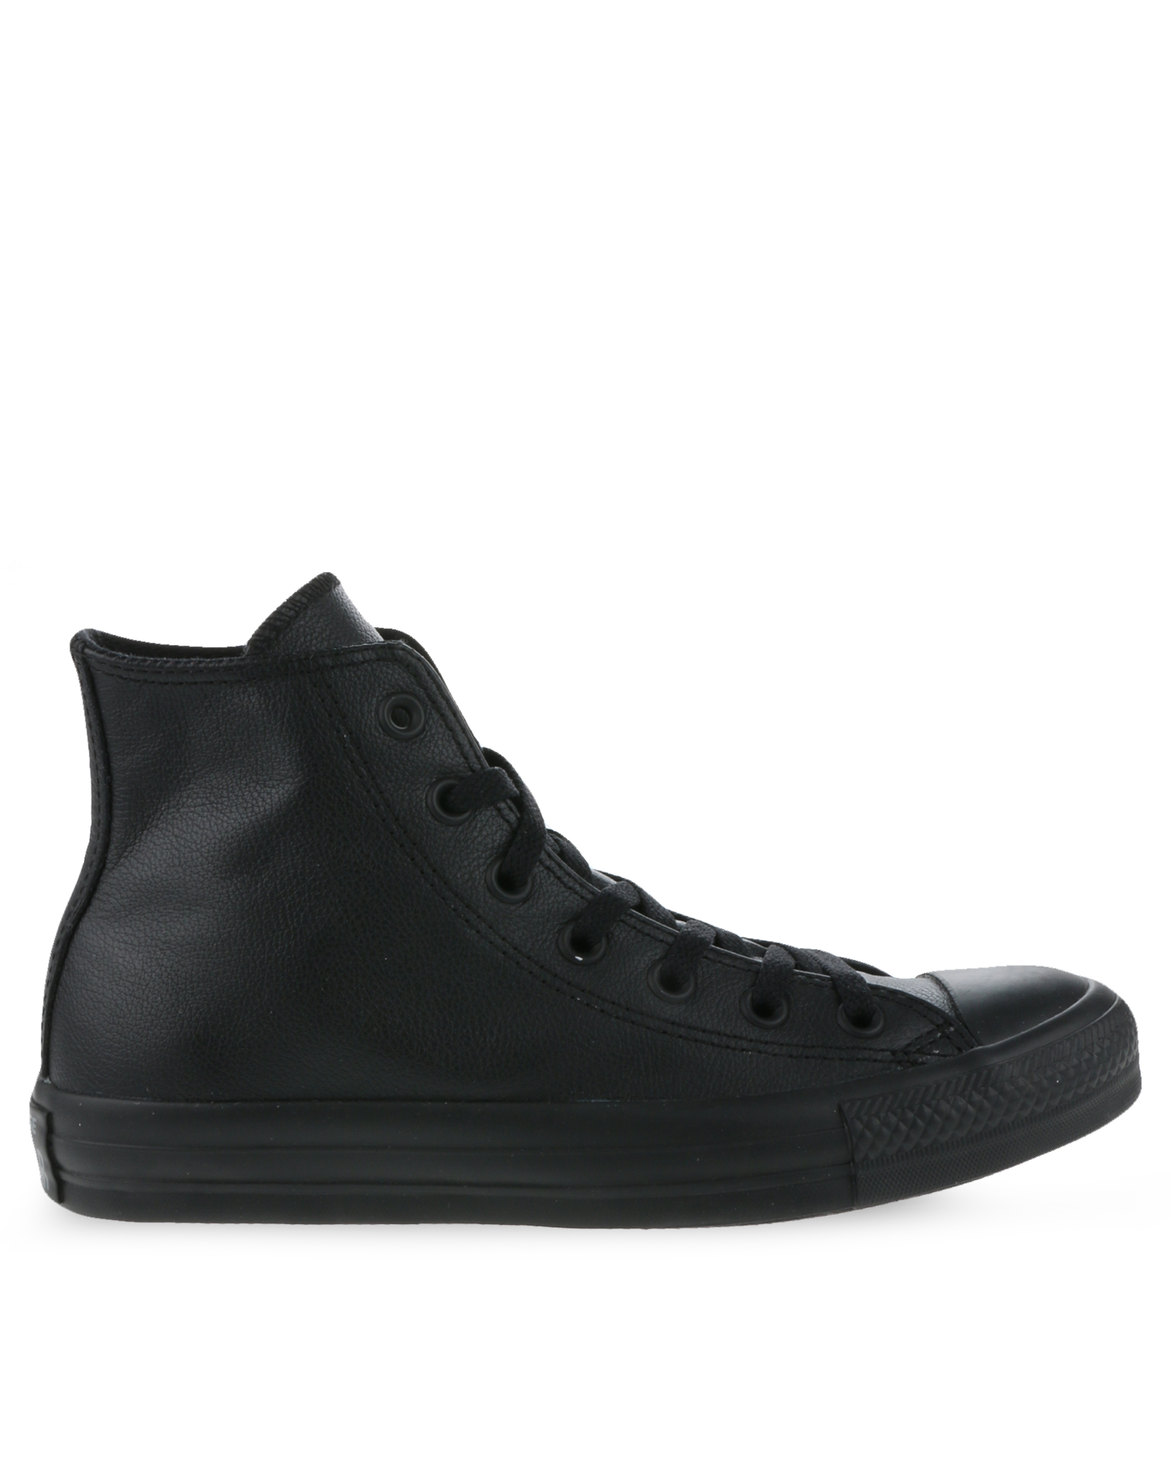 Converse Chuck Taylor All Star Hi Leather Mono Lo Sneakers Black | Zando